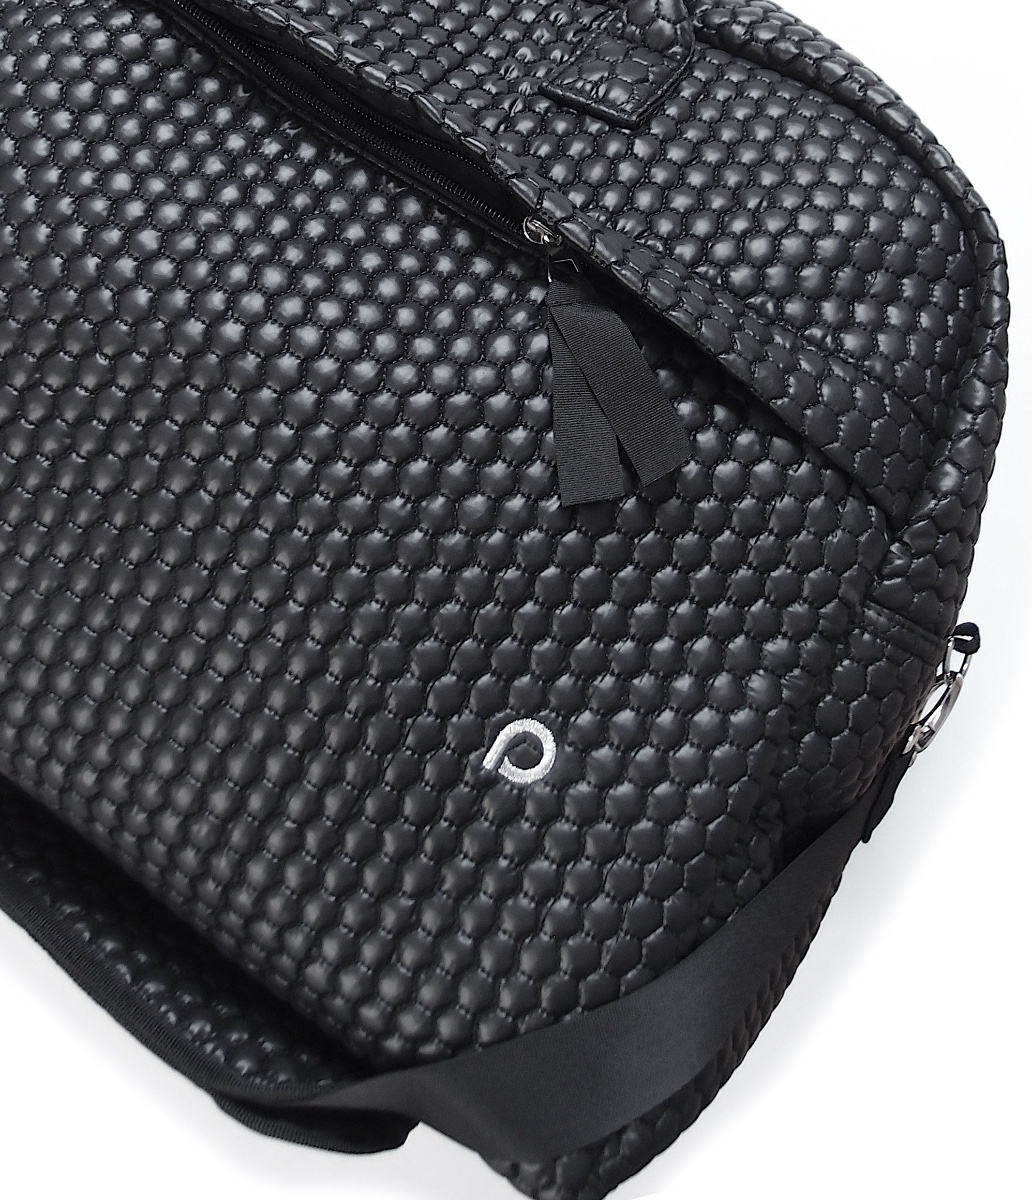 kliknutít zobrazíte maximální velikost obrázku cestovní taška Black Comb